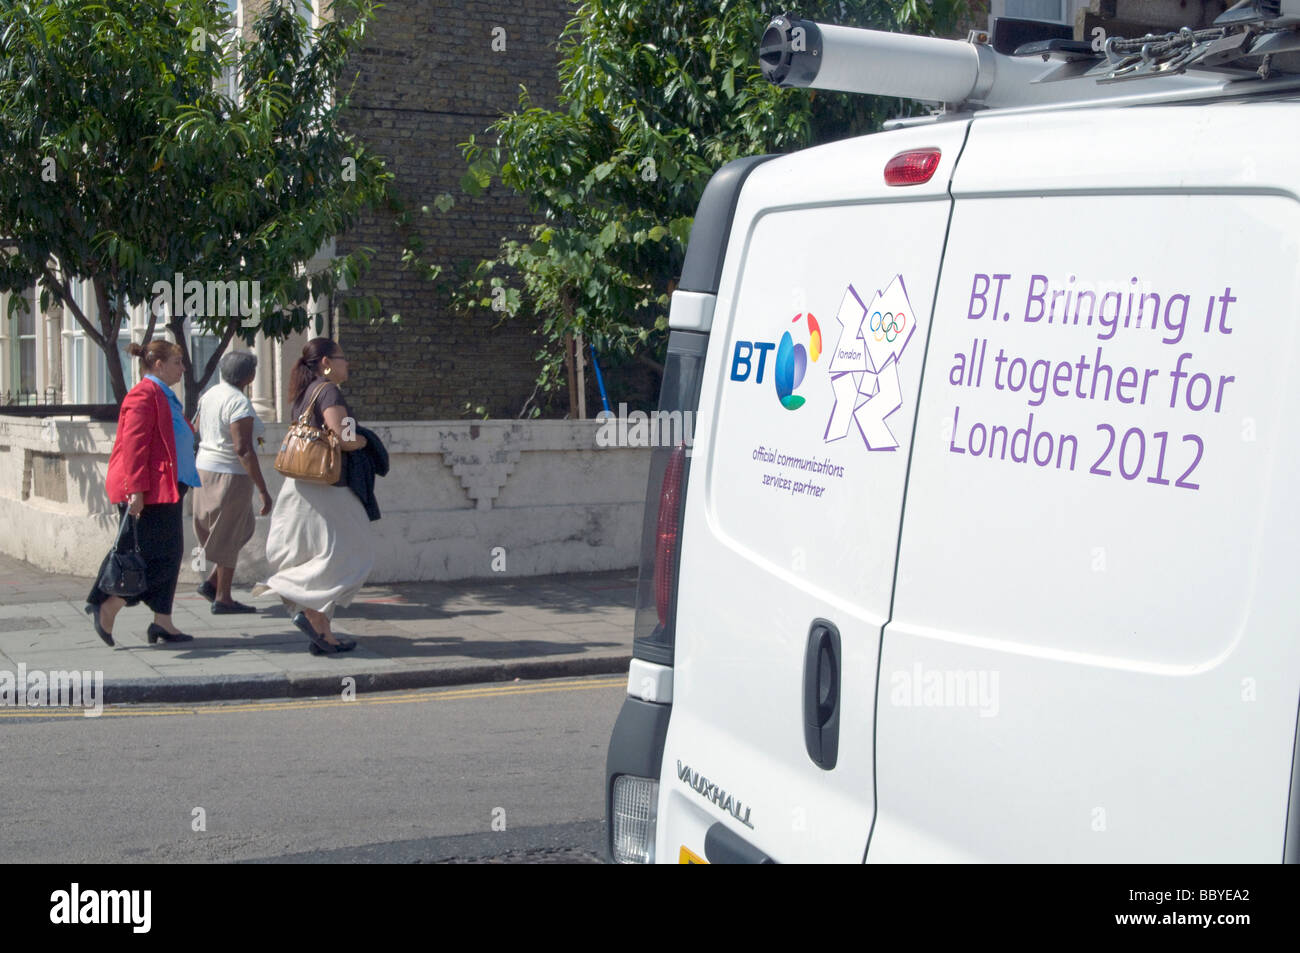 Regno Unito. A British Telecom van. BT è sponsor ufficiale delle Olimpiadi del 2012. Londra, Inghilterra. Foto di Julio Etchart Foto Stock